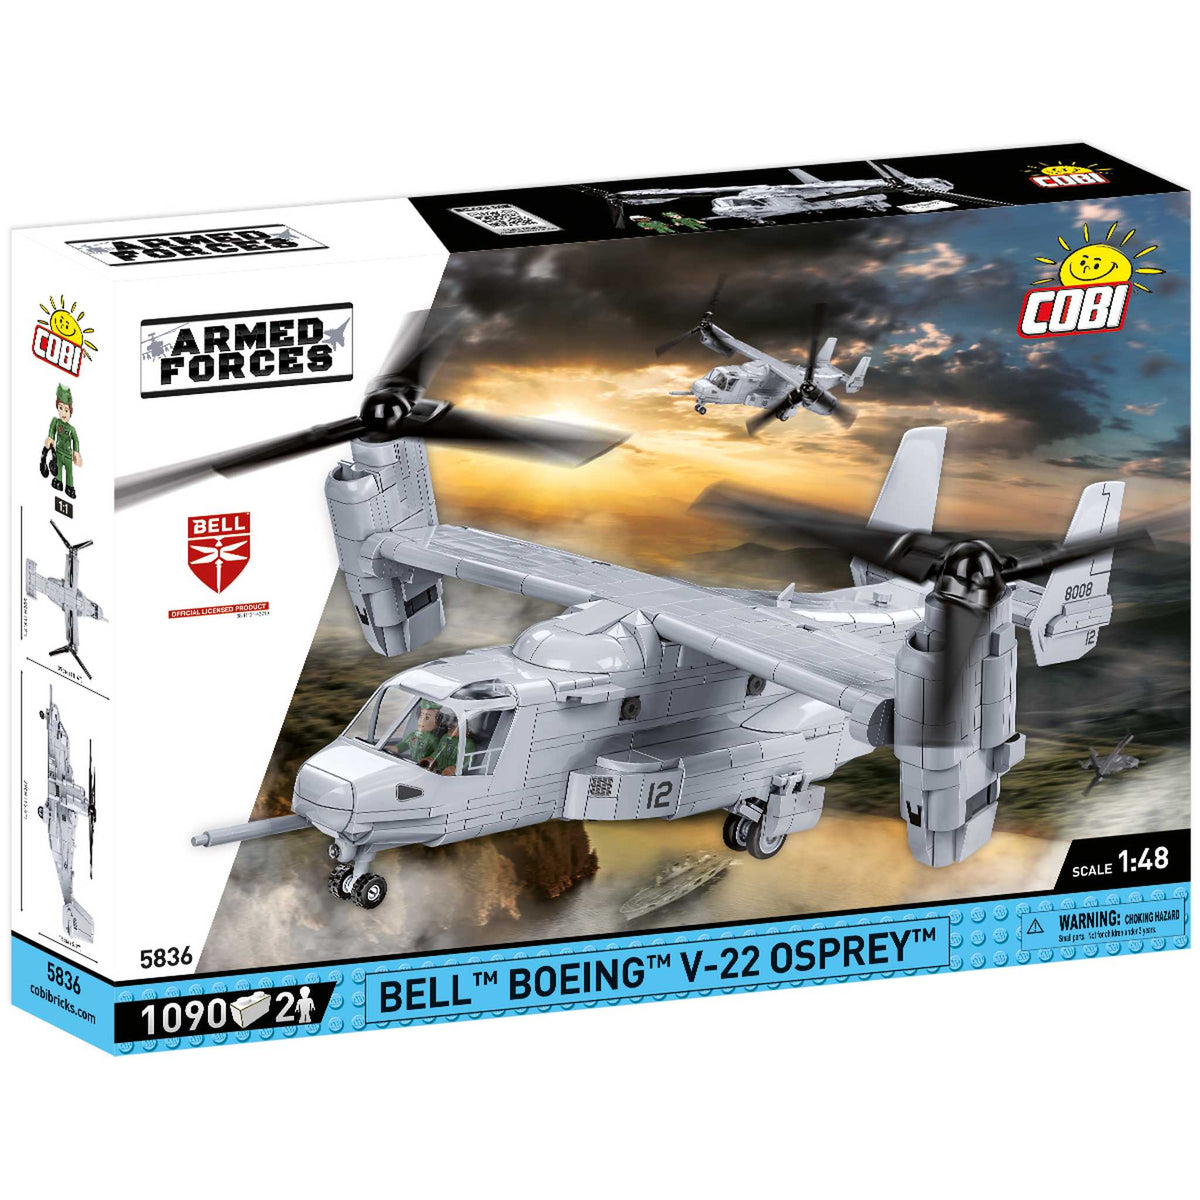 5836 - Bell Boeing V-22 Osprey (Cobi)